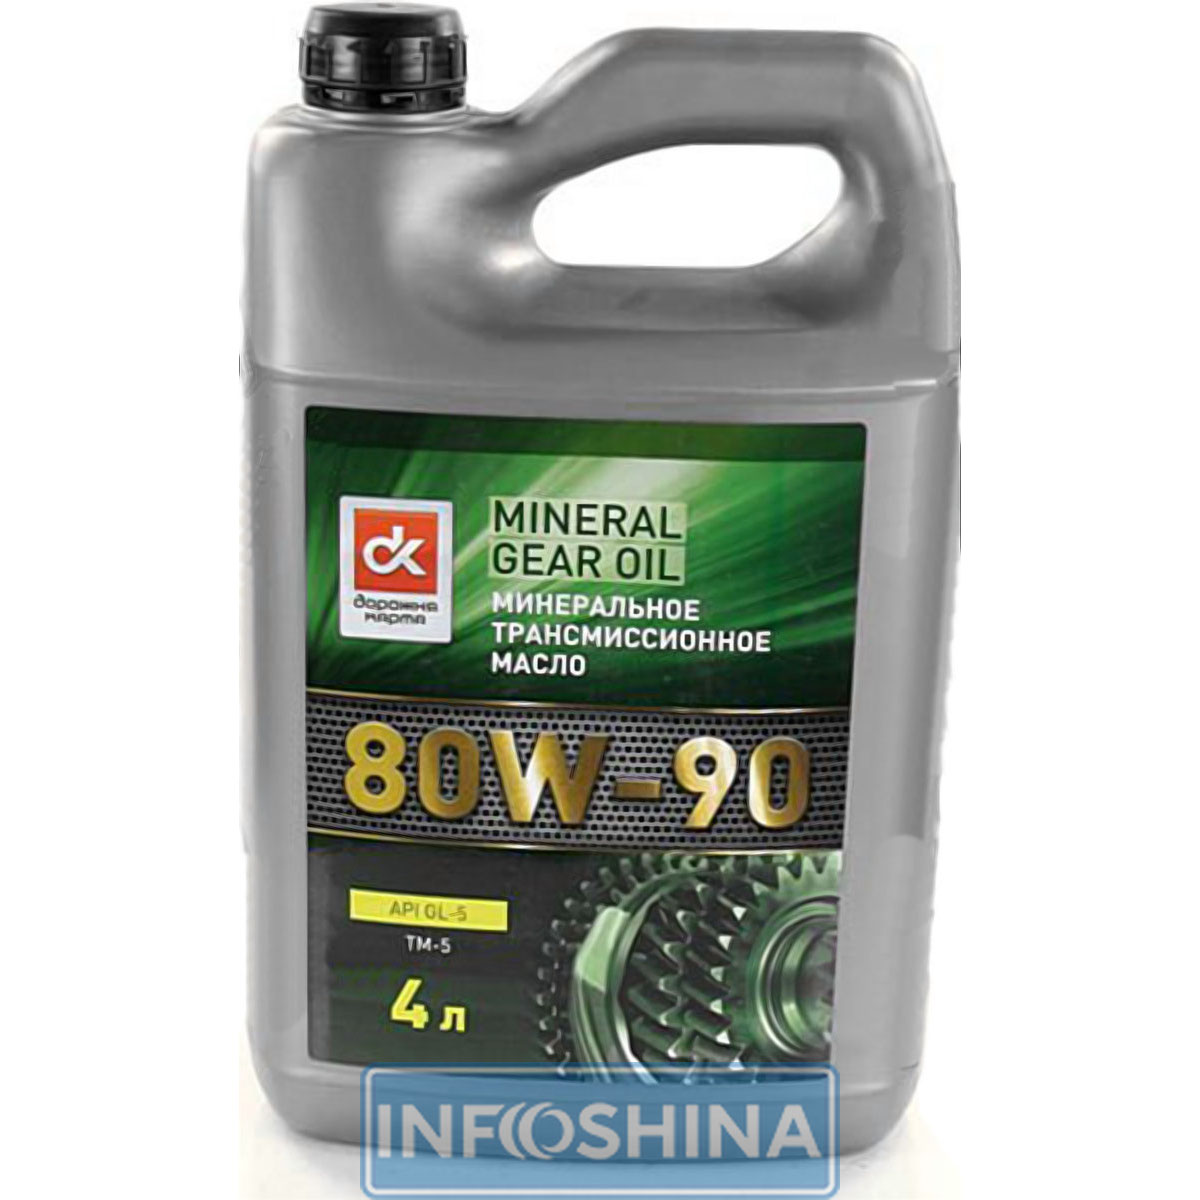 Купить масло ДК 80W-90 API GL-5 (4л)